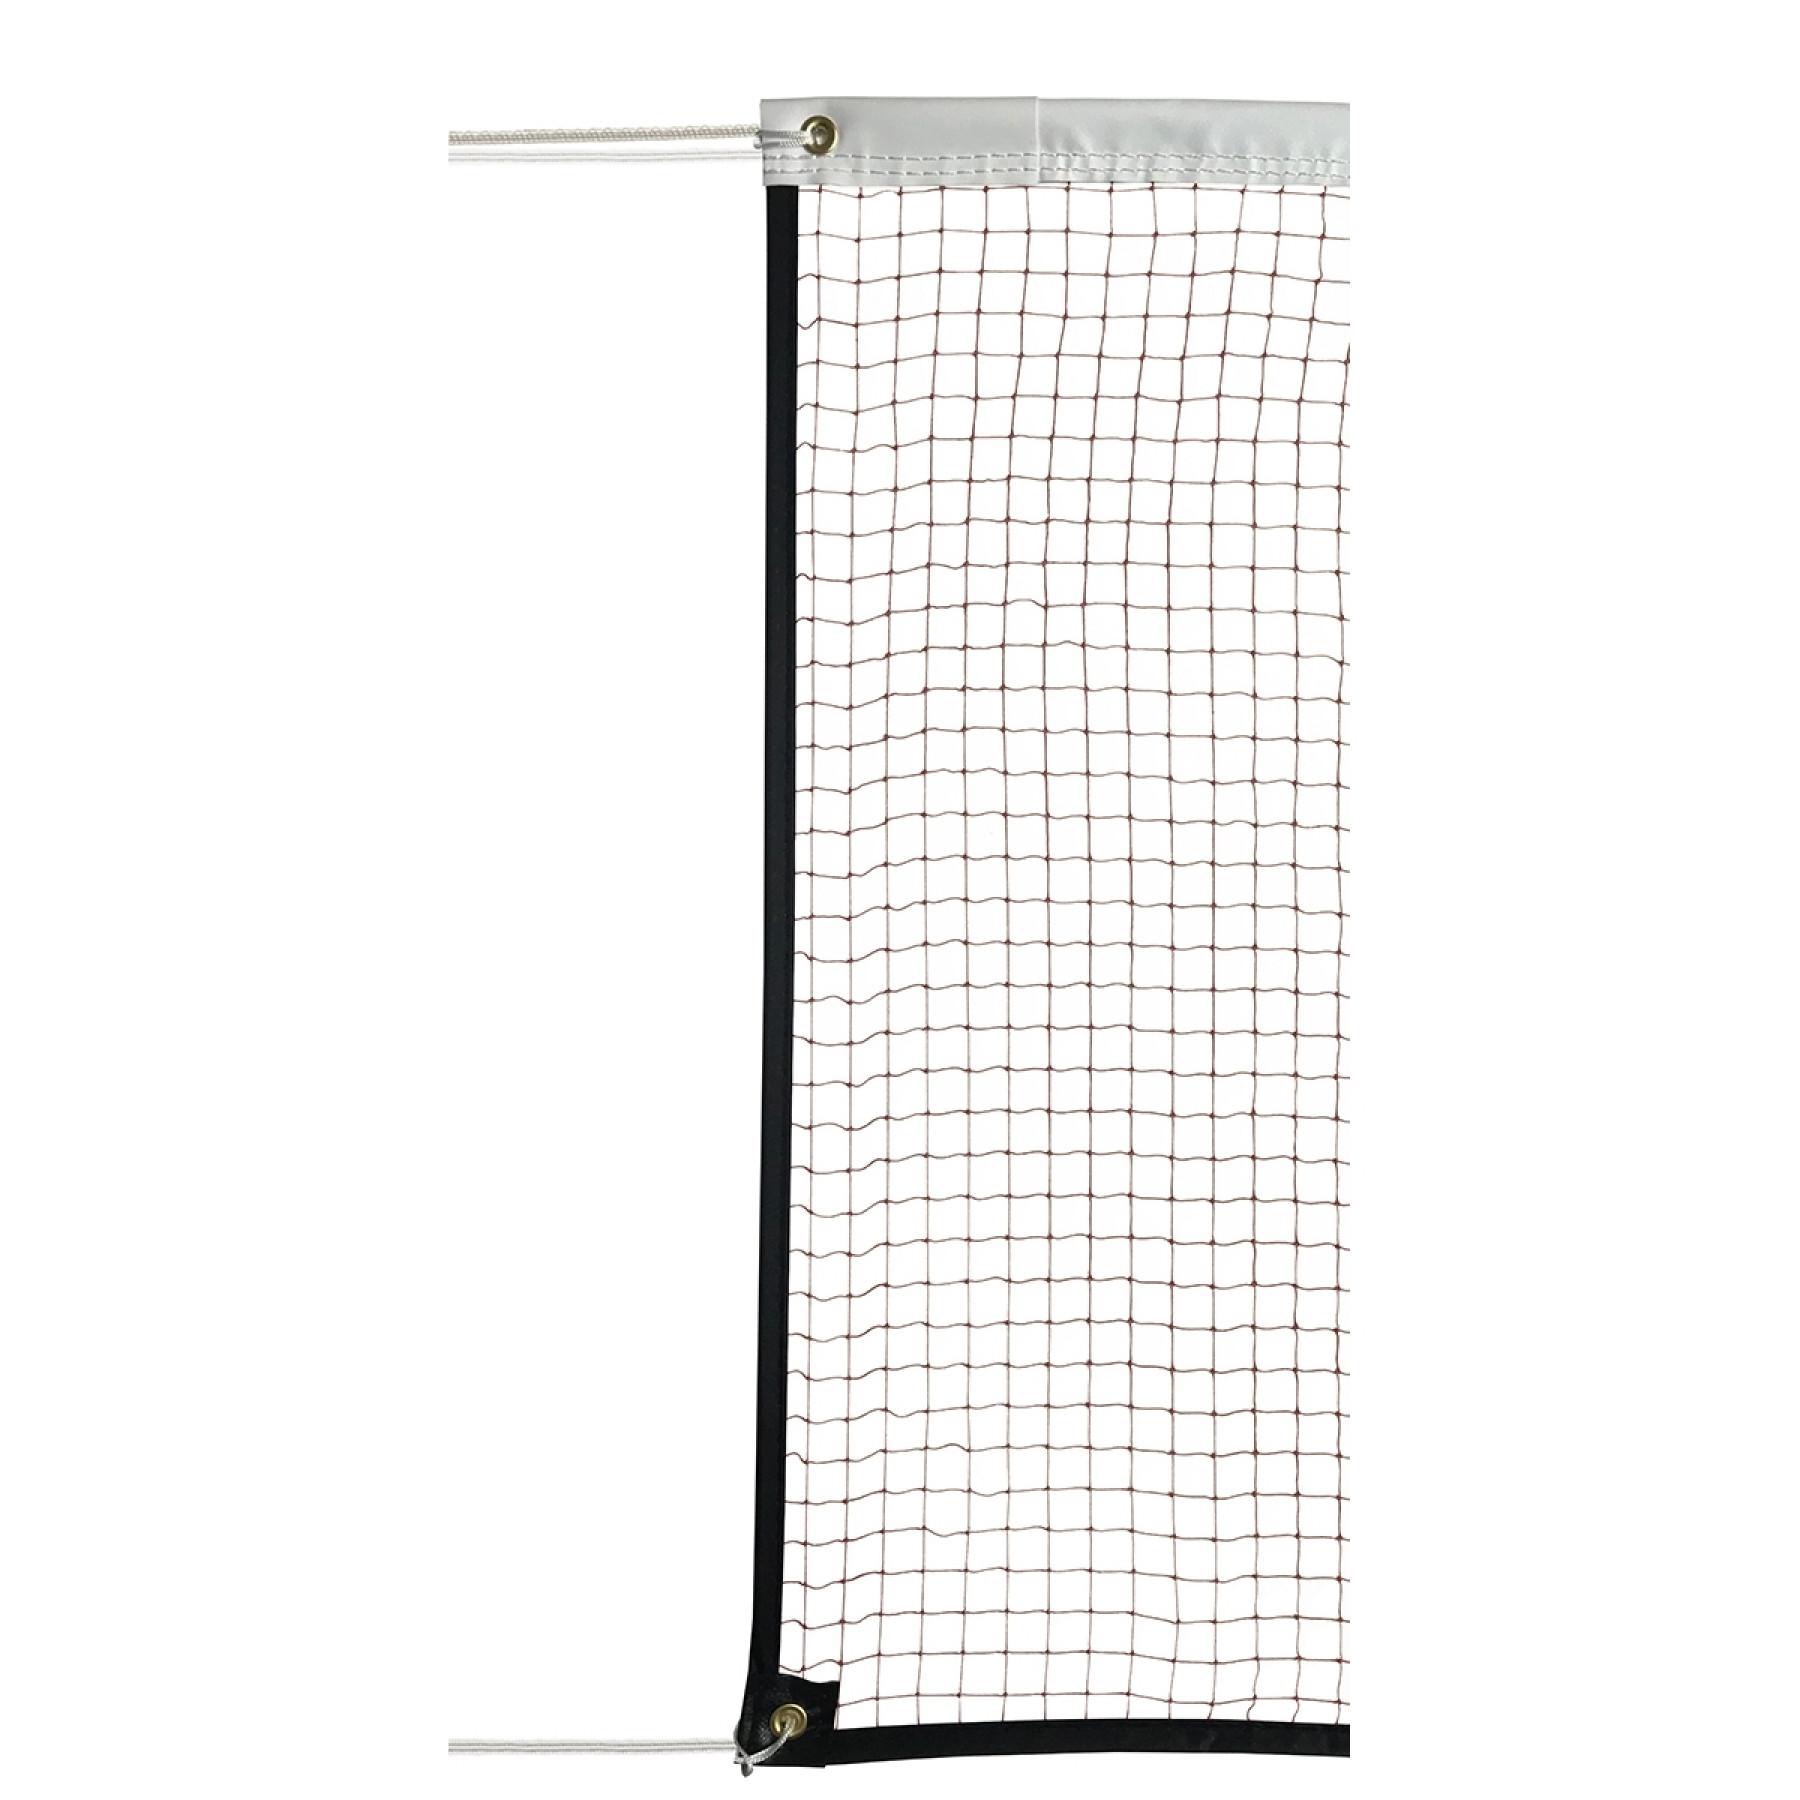 Filet badminton Compétition maille 19mm, 1.6mm Sporti France - Autres sports